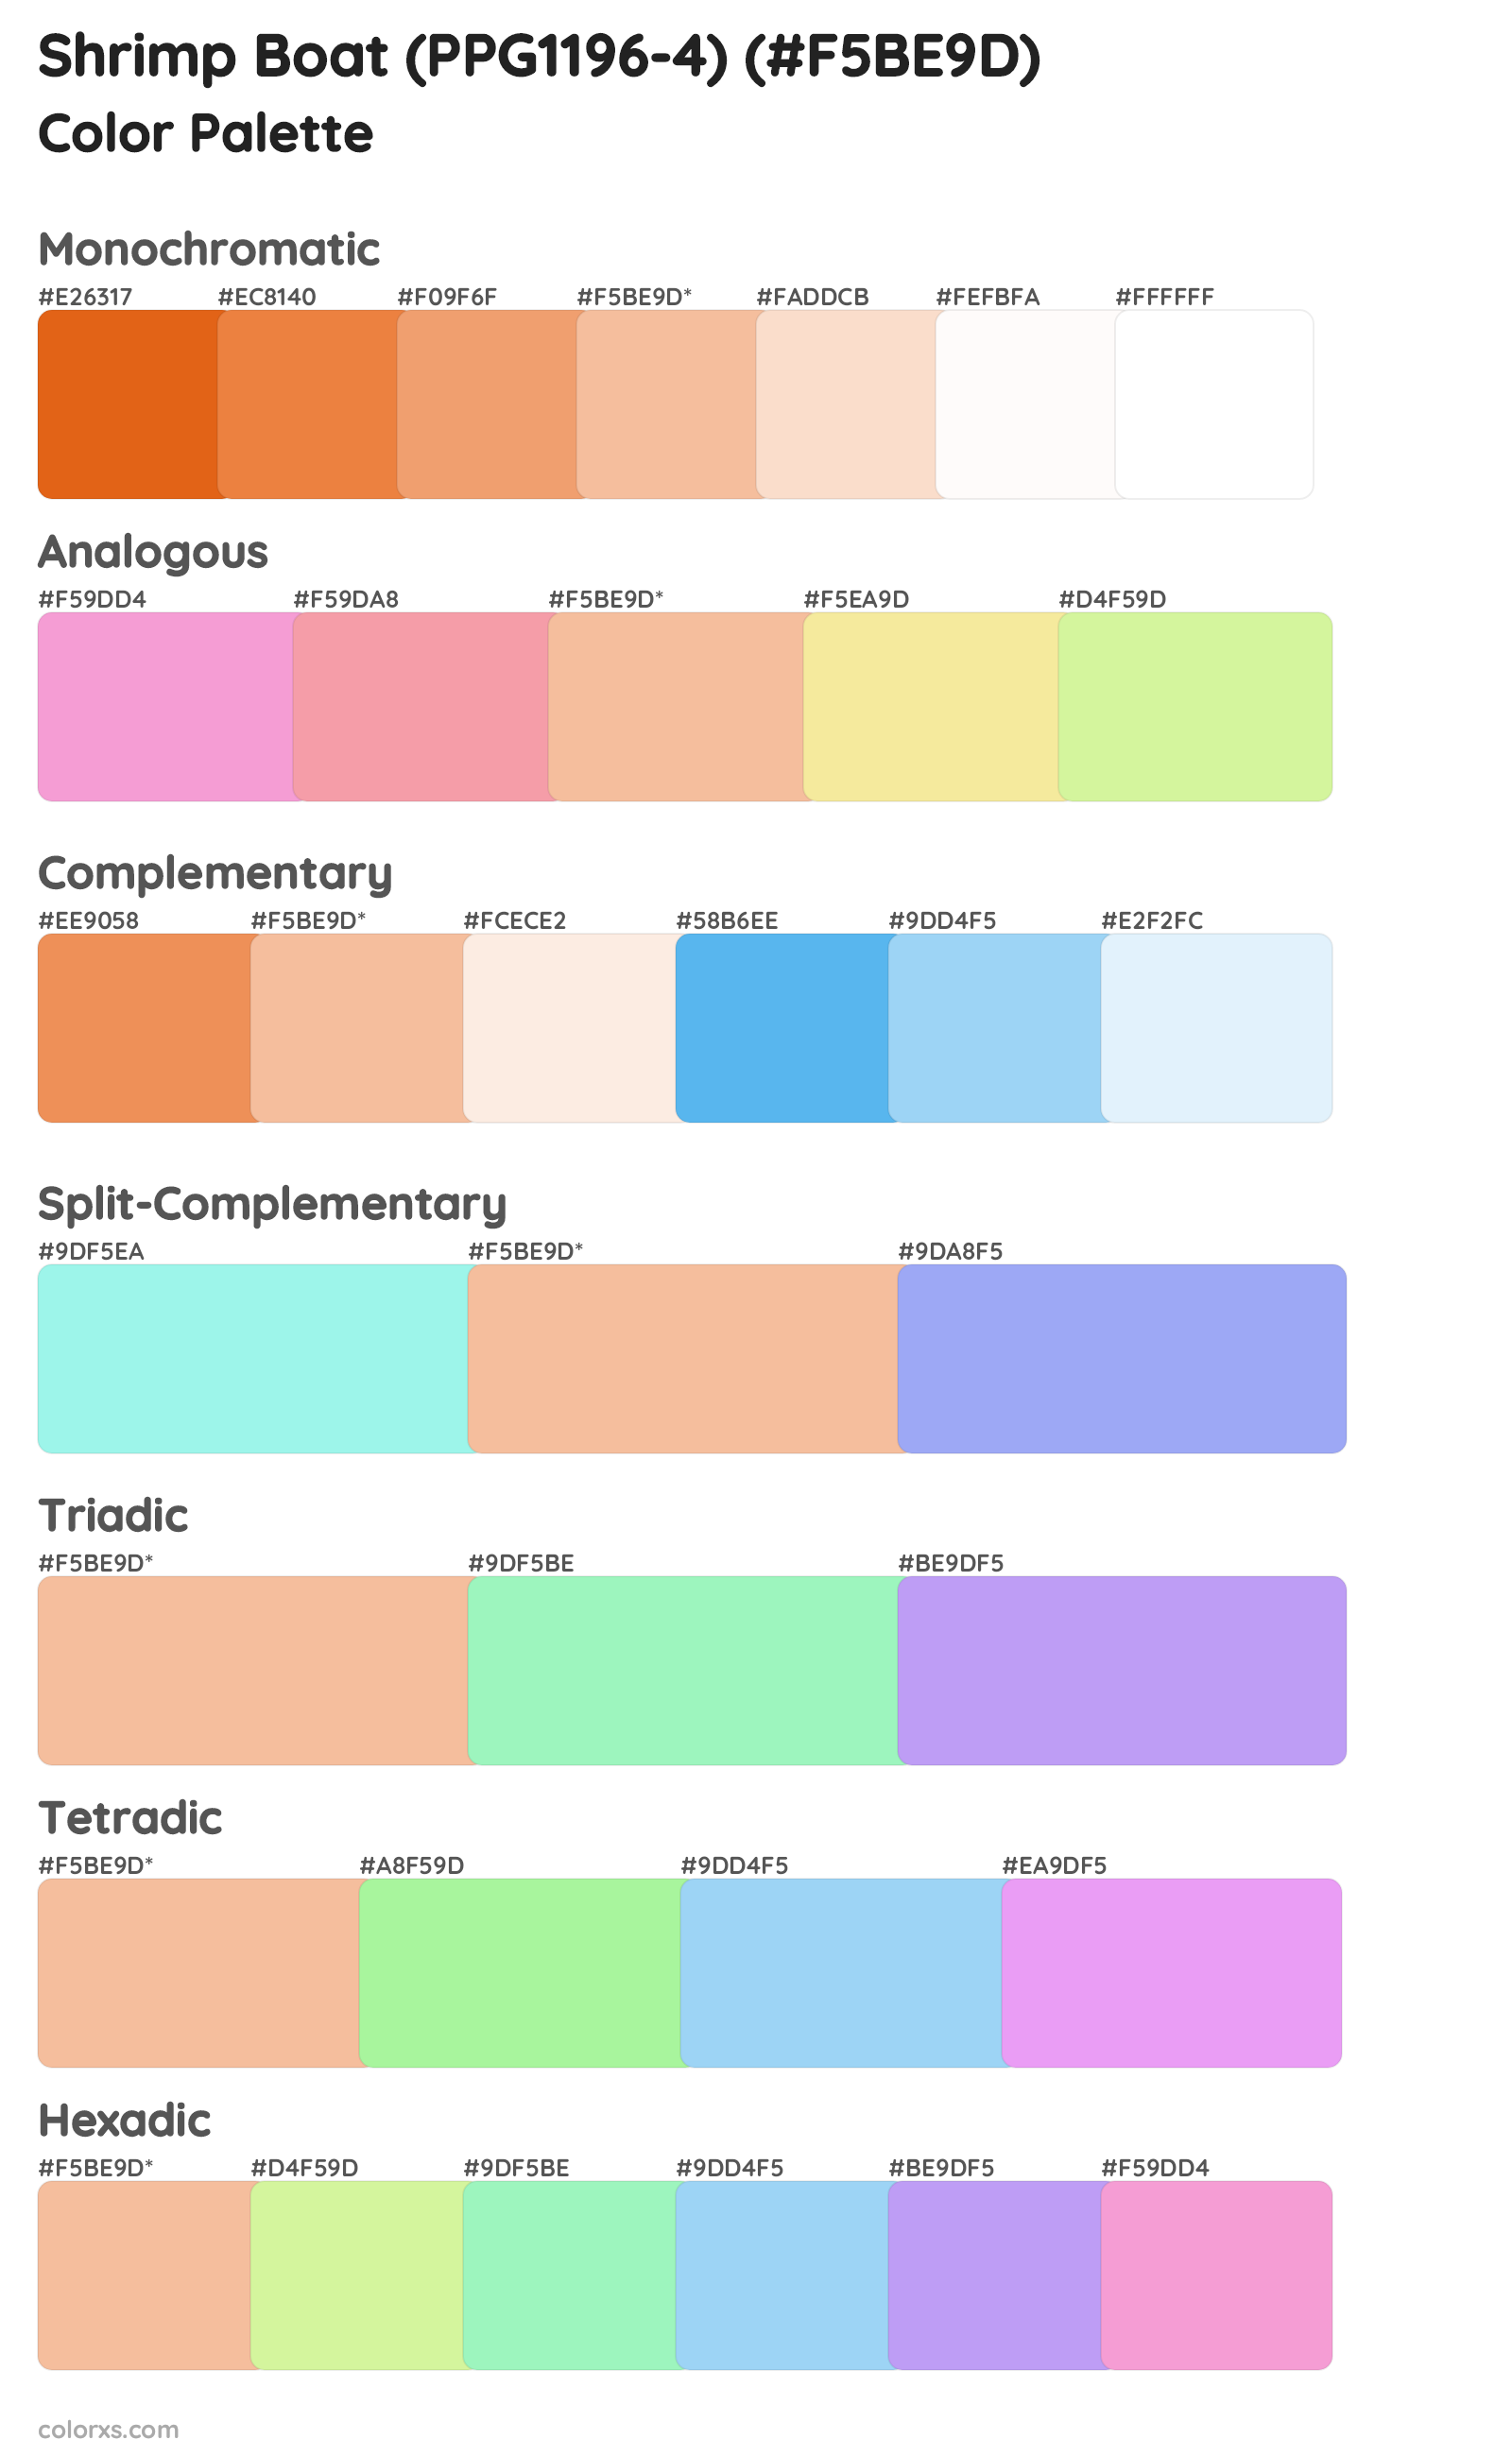 Shrimp Boat (PPG1196-4) Color Scheme Palettes